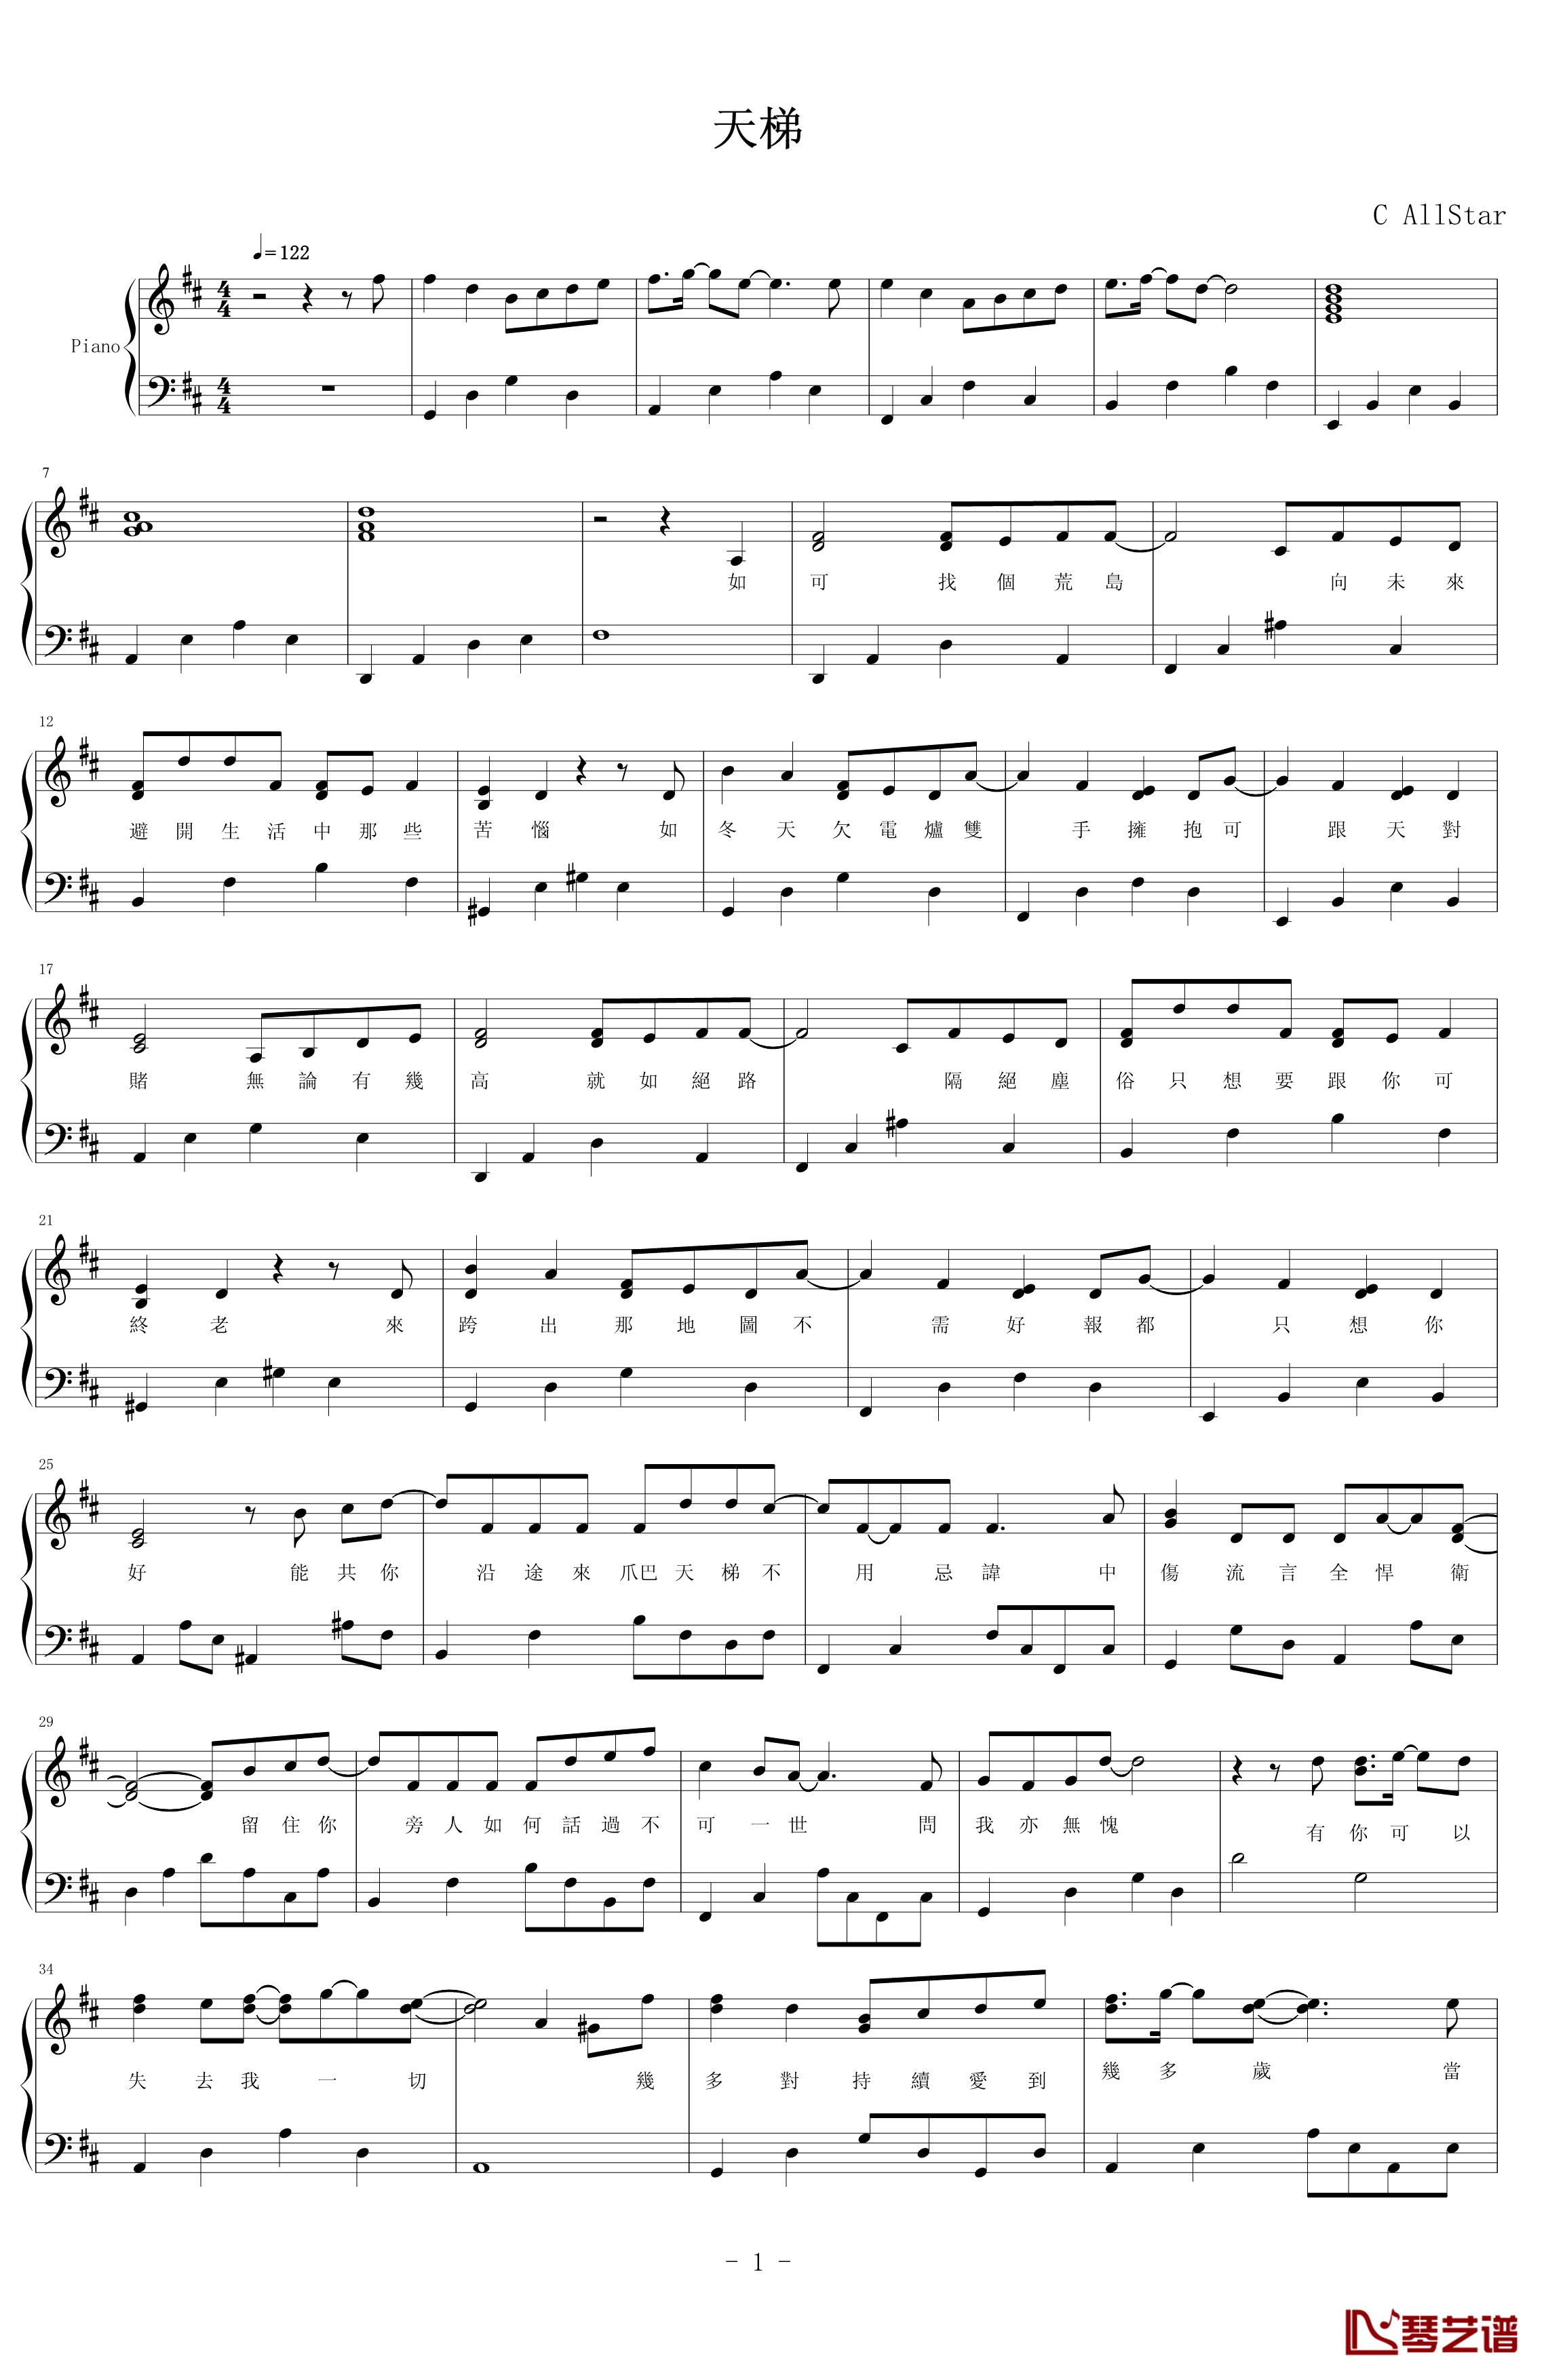 天梯钢琴谱-简易版-C AllStar1